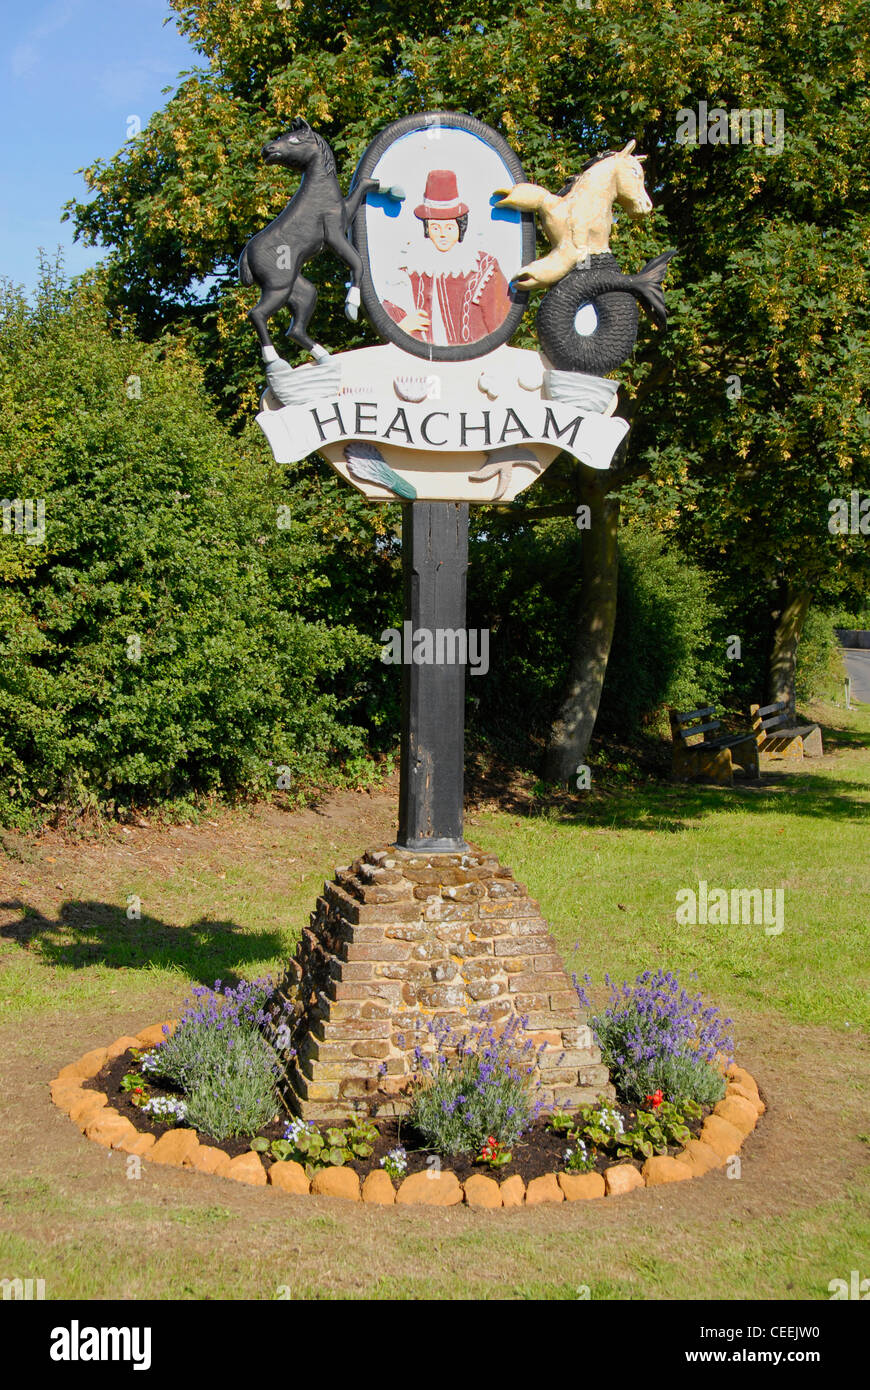 Village sign, Heacham, Norfolk, England Stock Photo